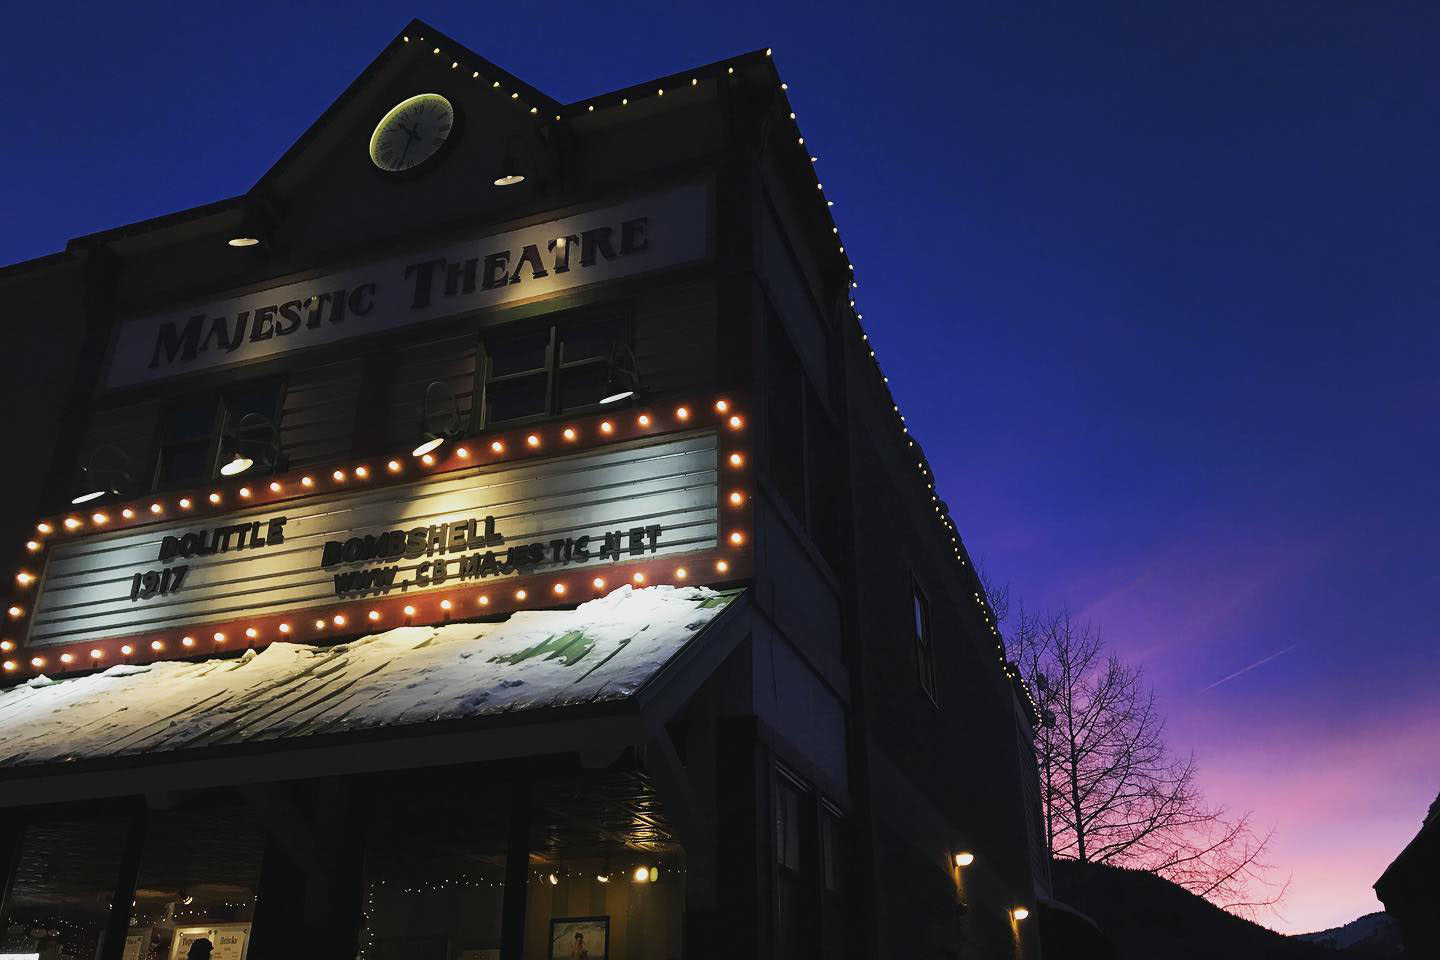 Majestic Theatre - Movie Theatre in Crested Butte